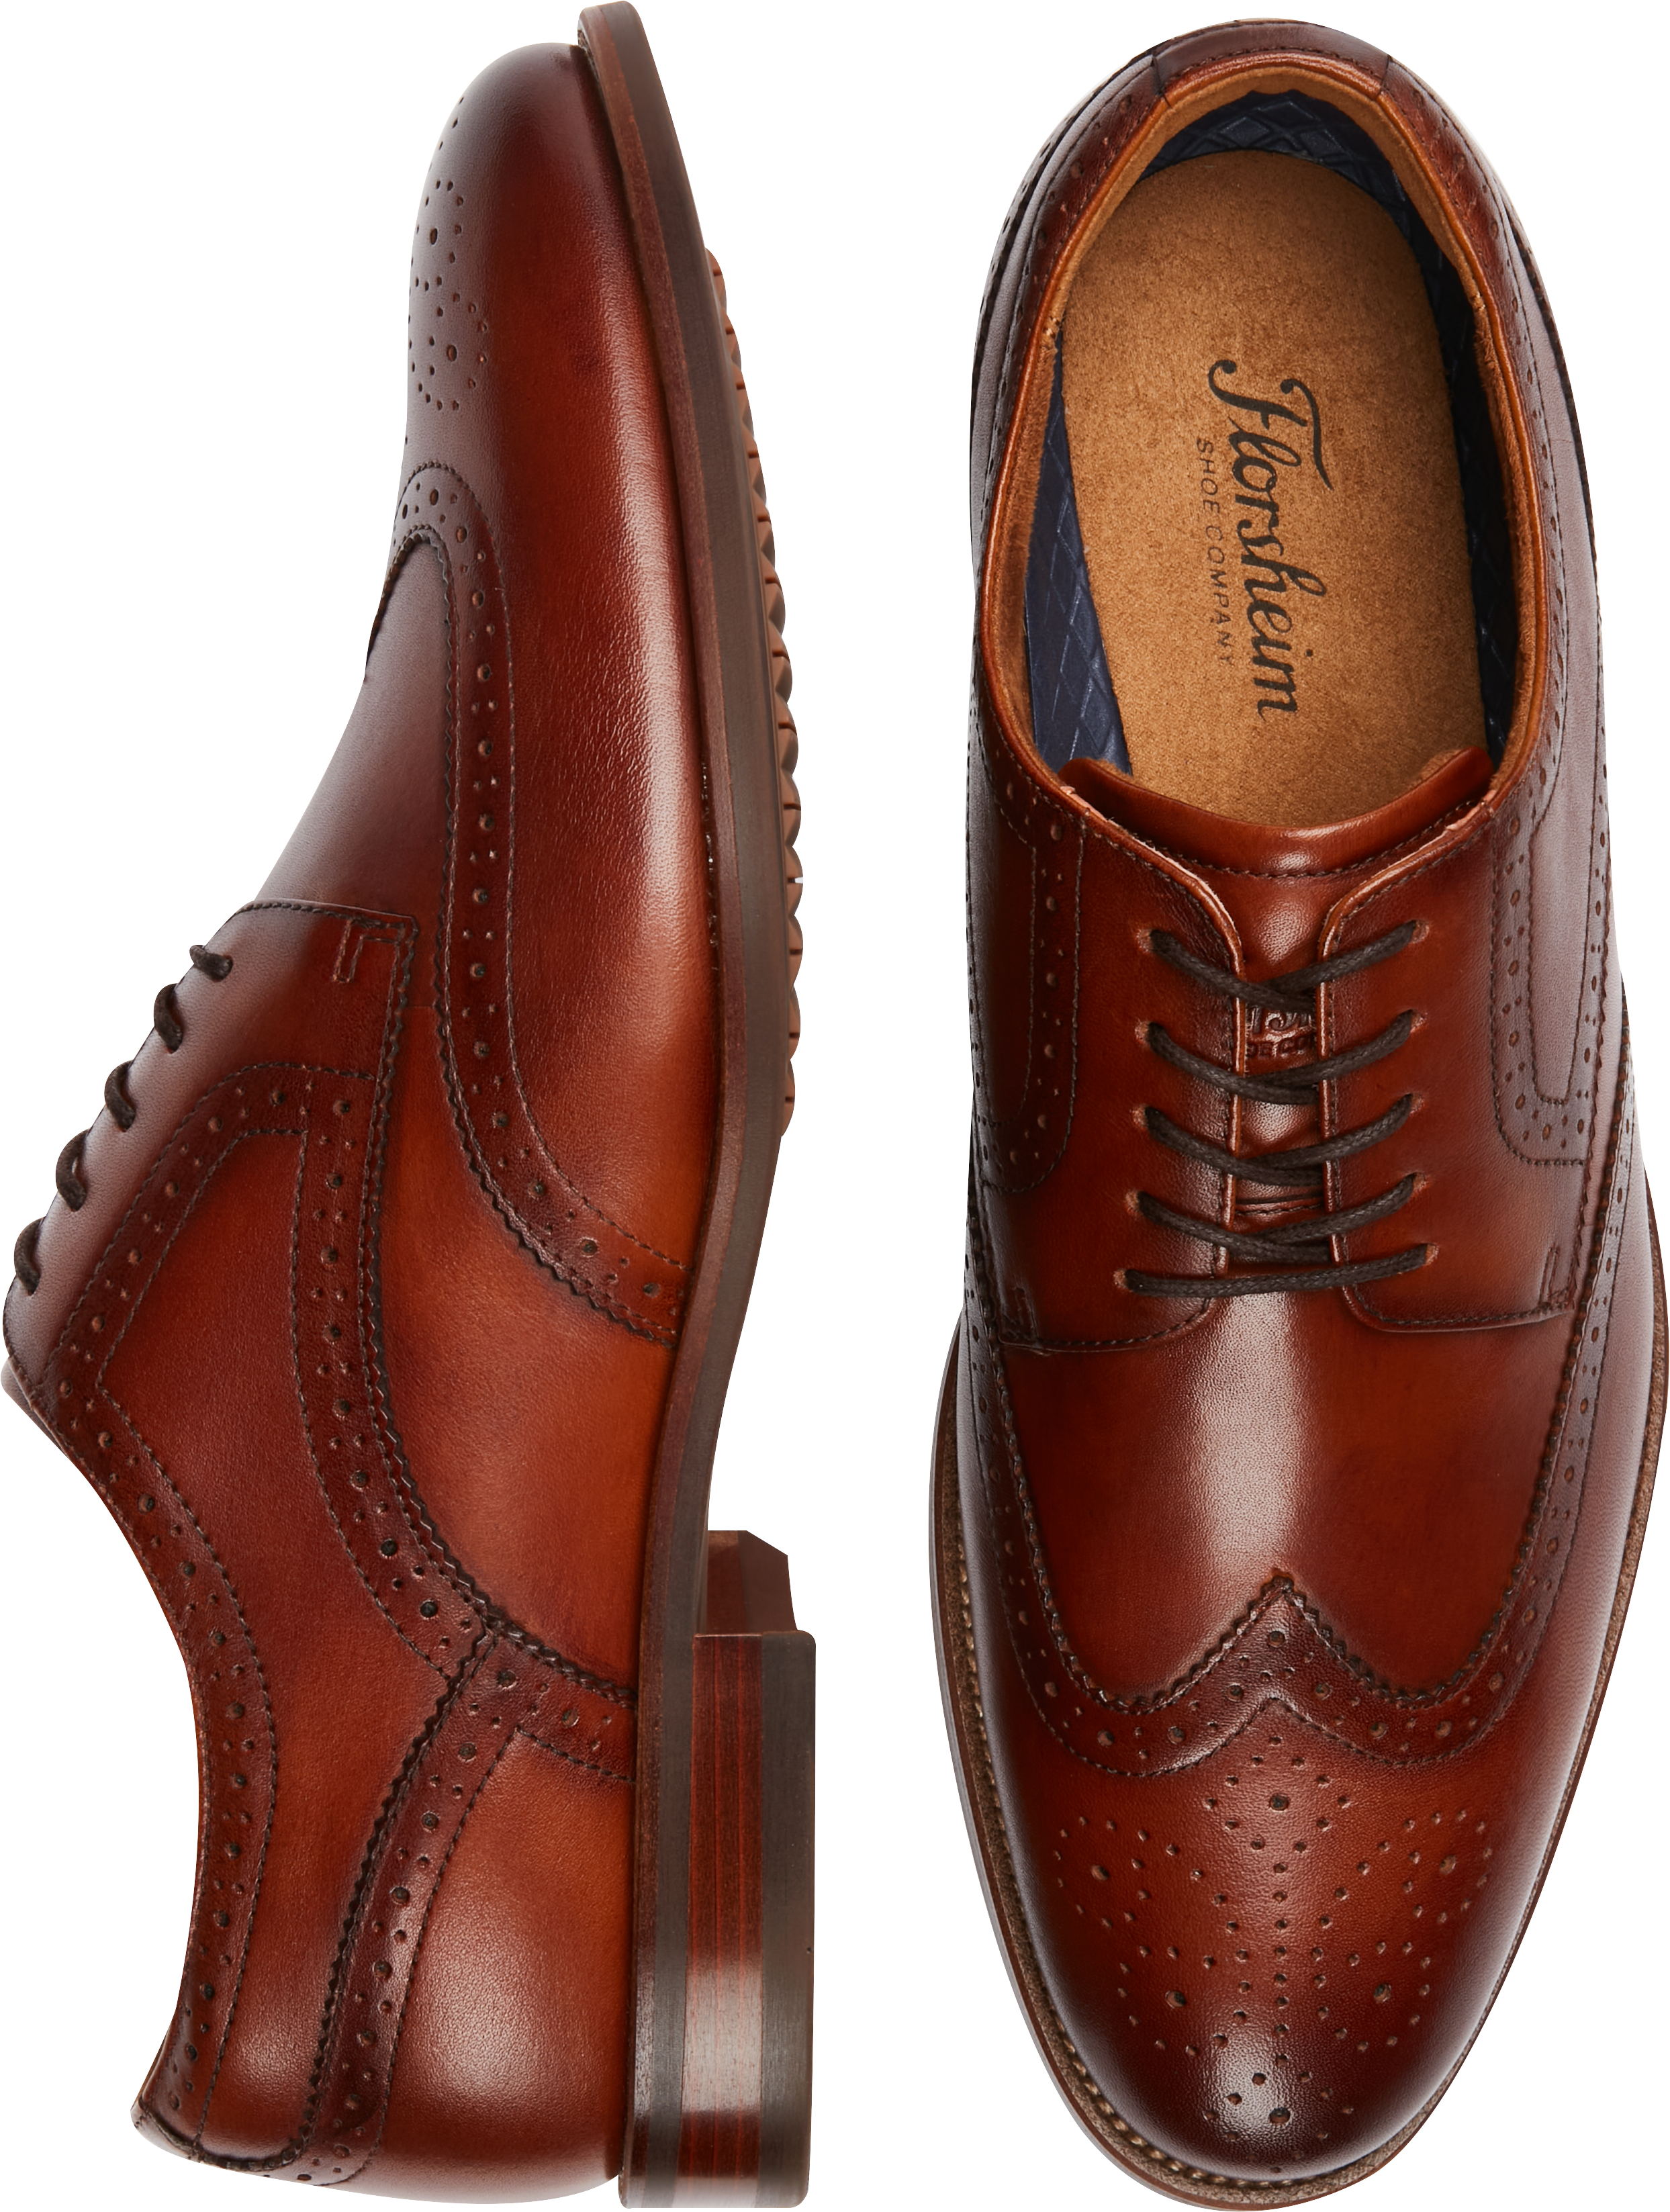 Florsheim Remi Wing Tip Oxfords, Cognac - Men's Shoes | Men's Wearhouse